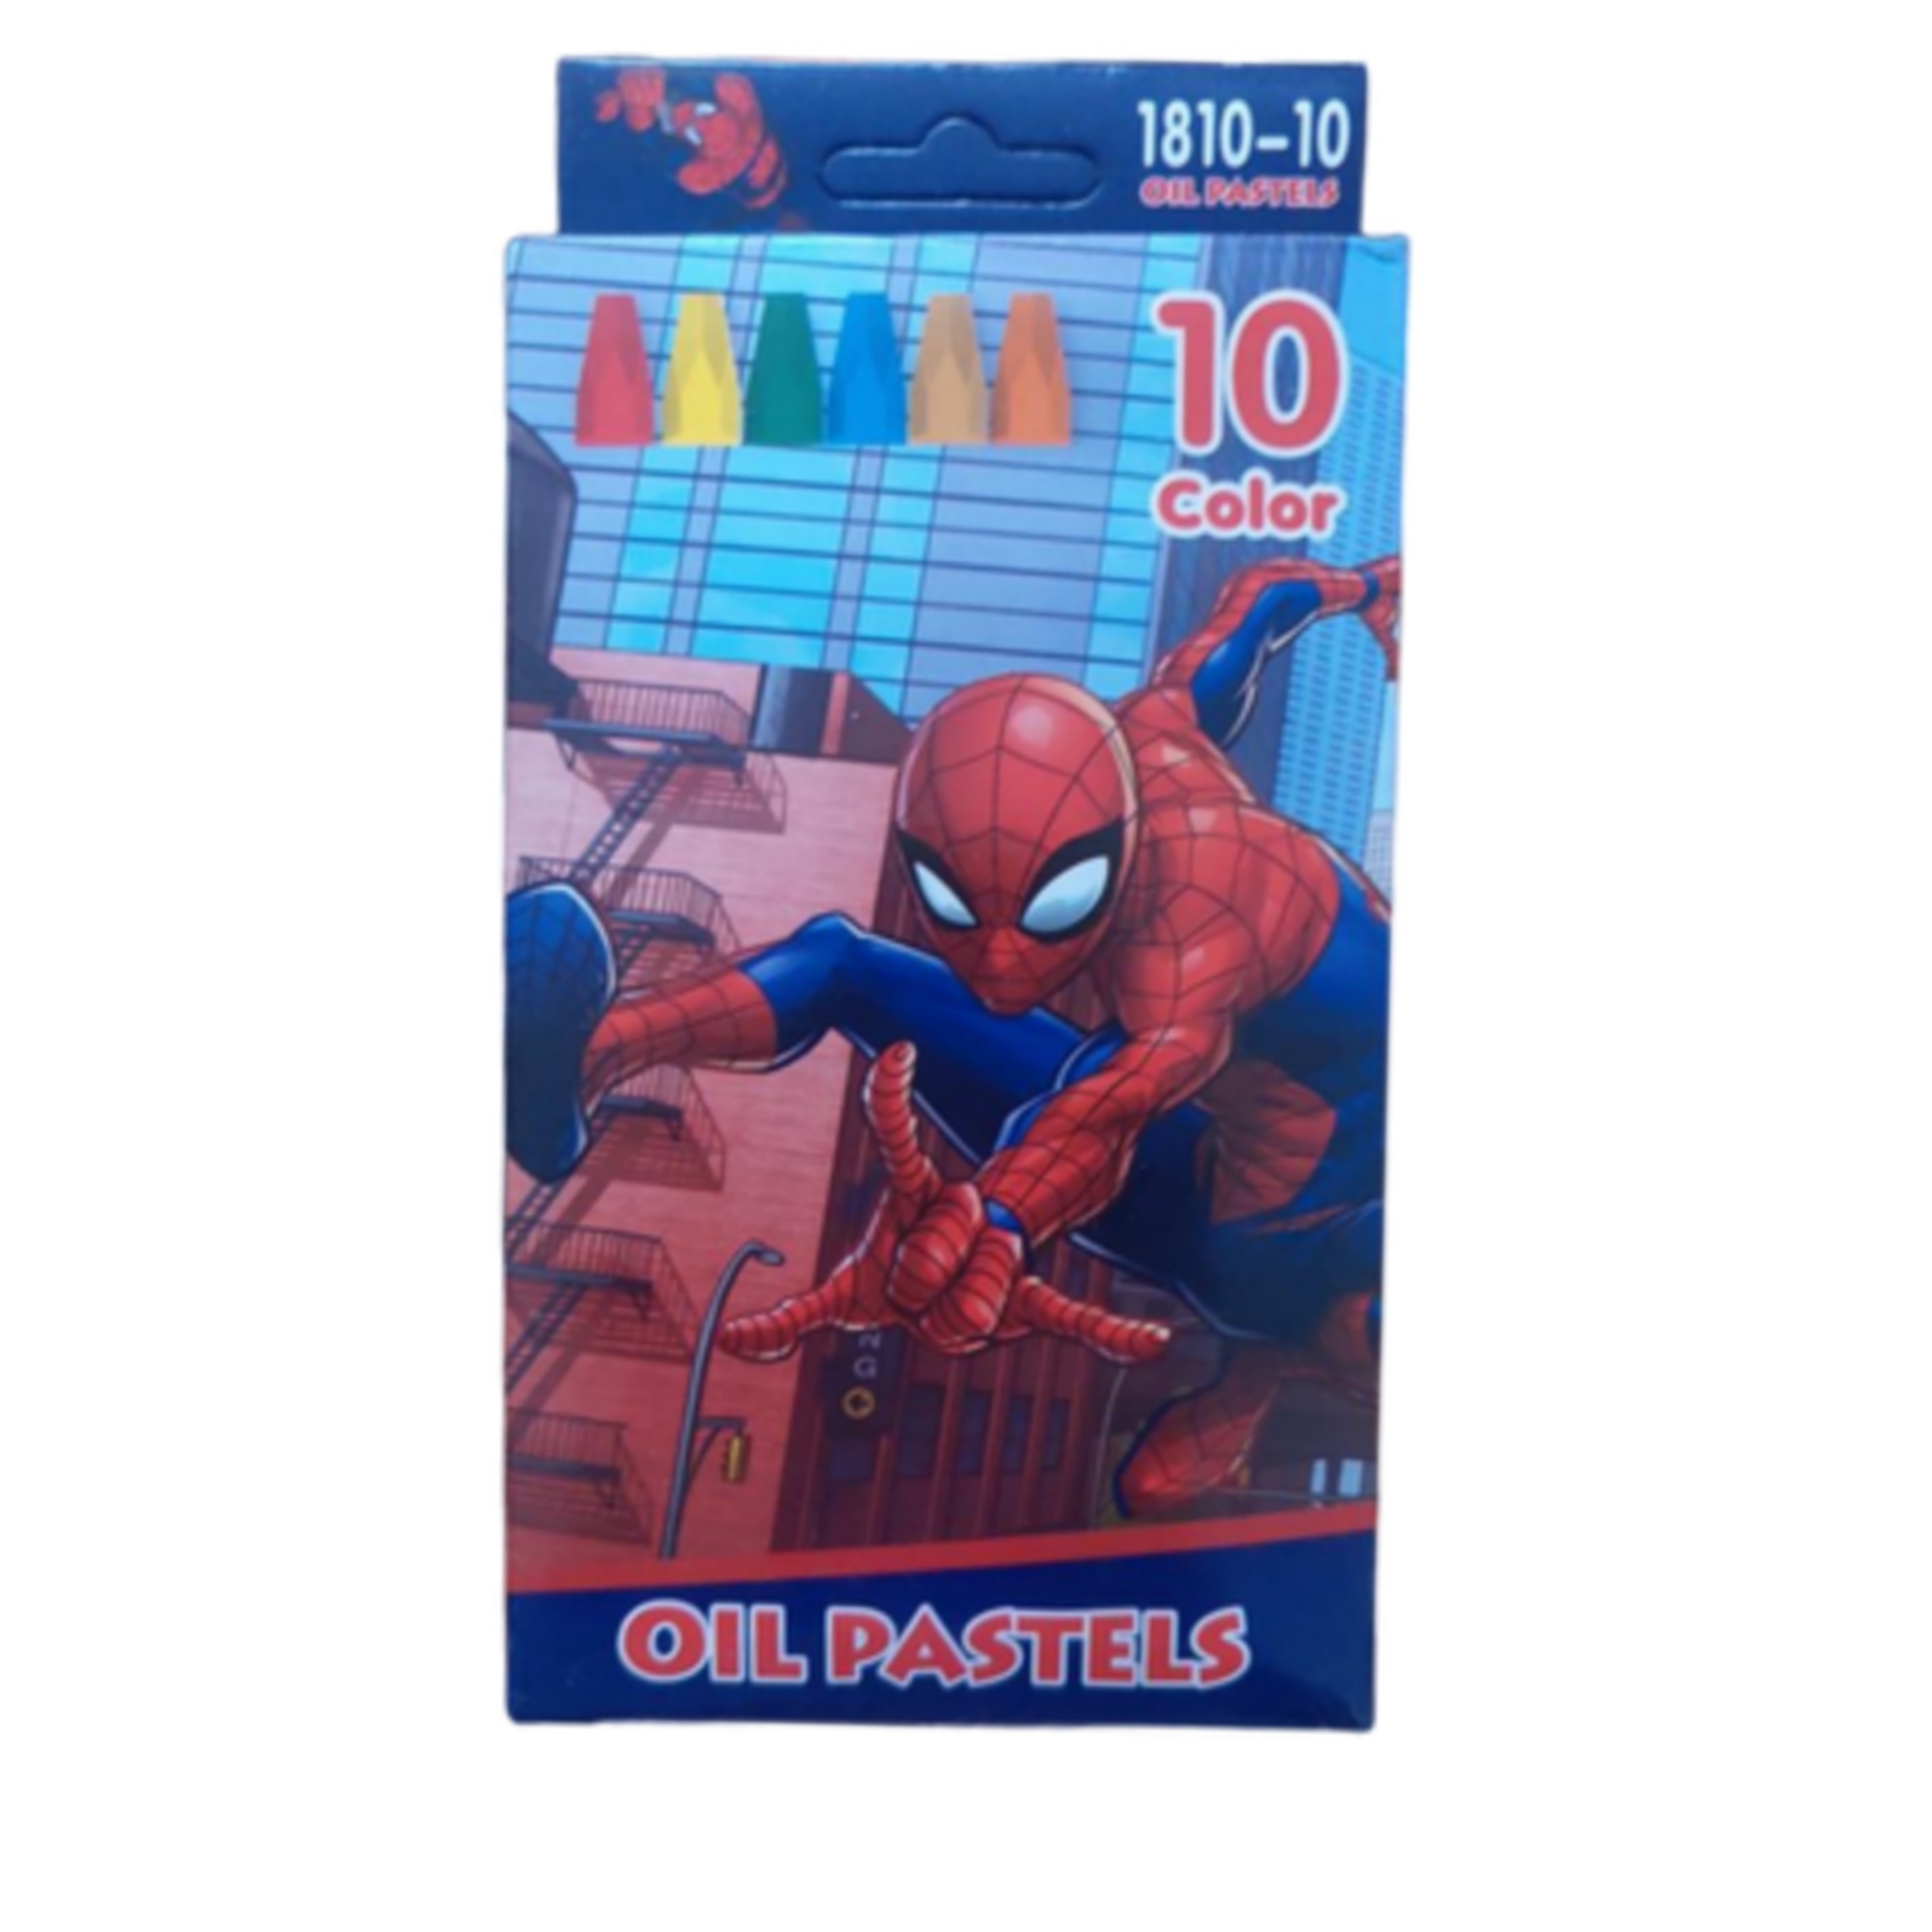 نکته خرید - قیمت روز پاستل روغنی 10 رنگ مدل مرد عنکبوتی خرید